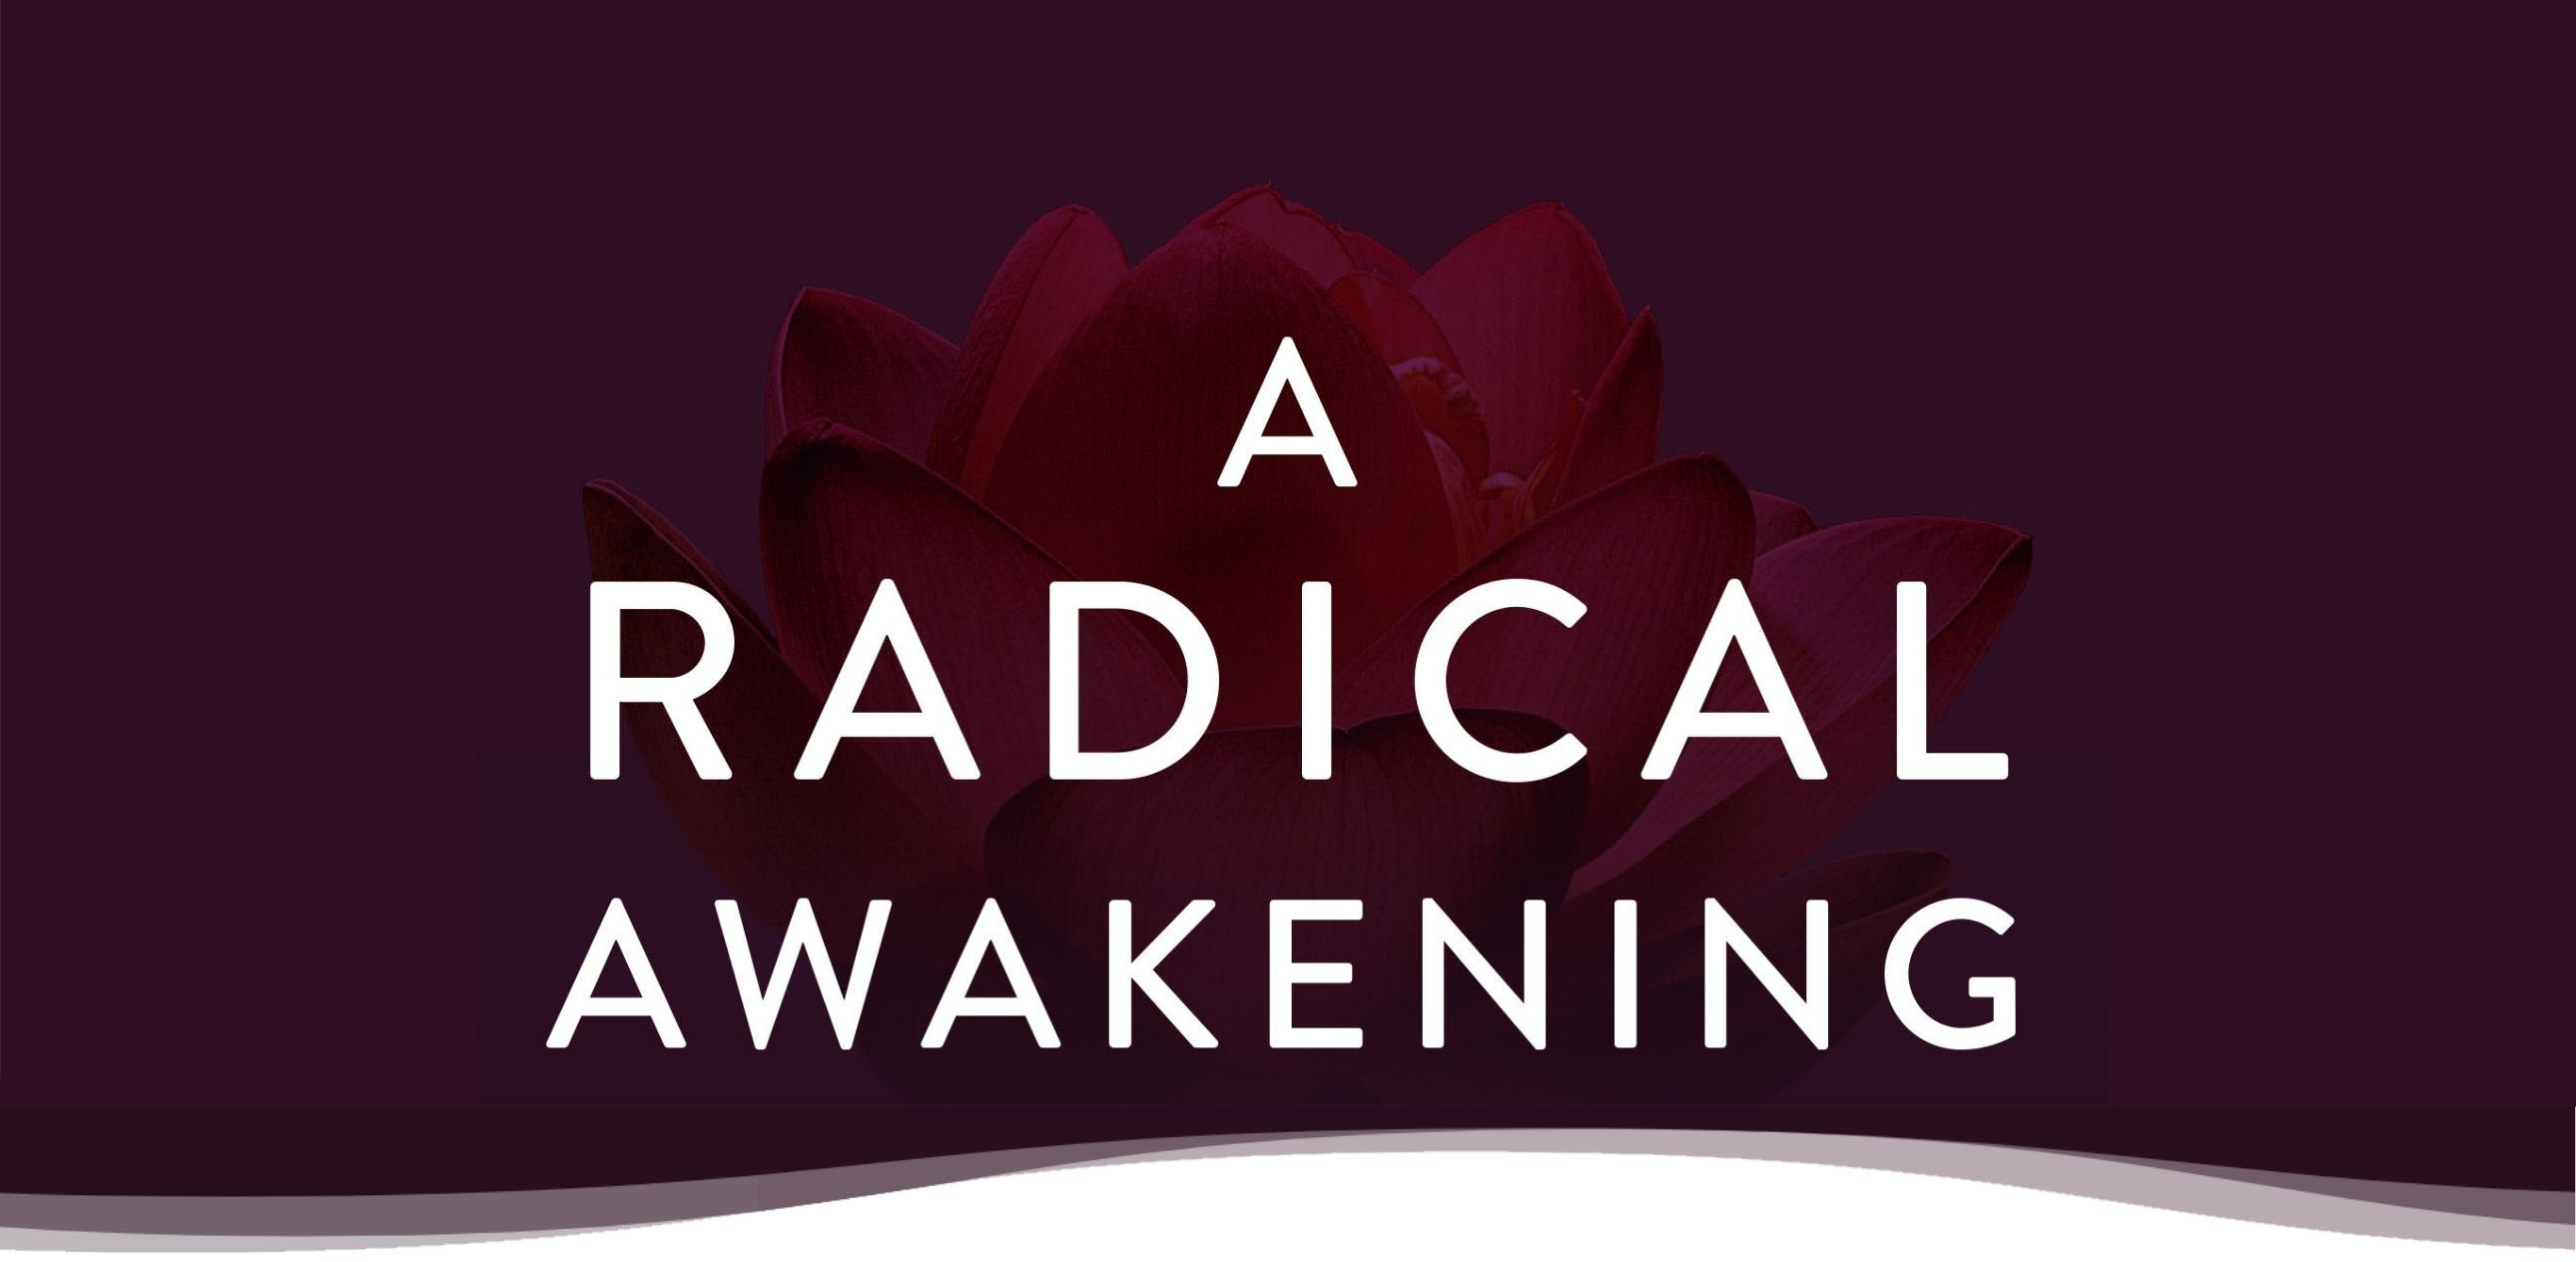 a radical awakening pdf free download